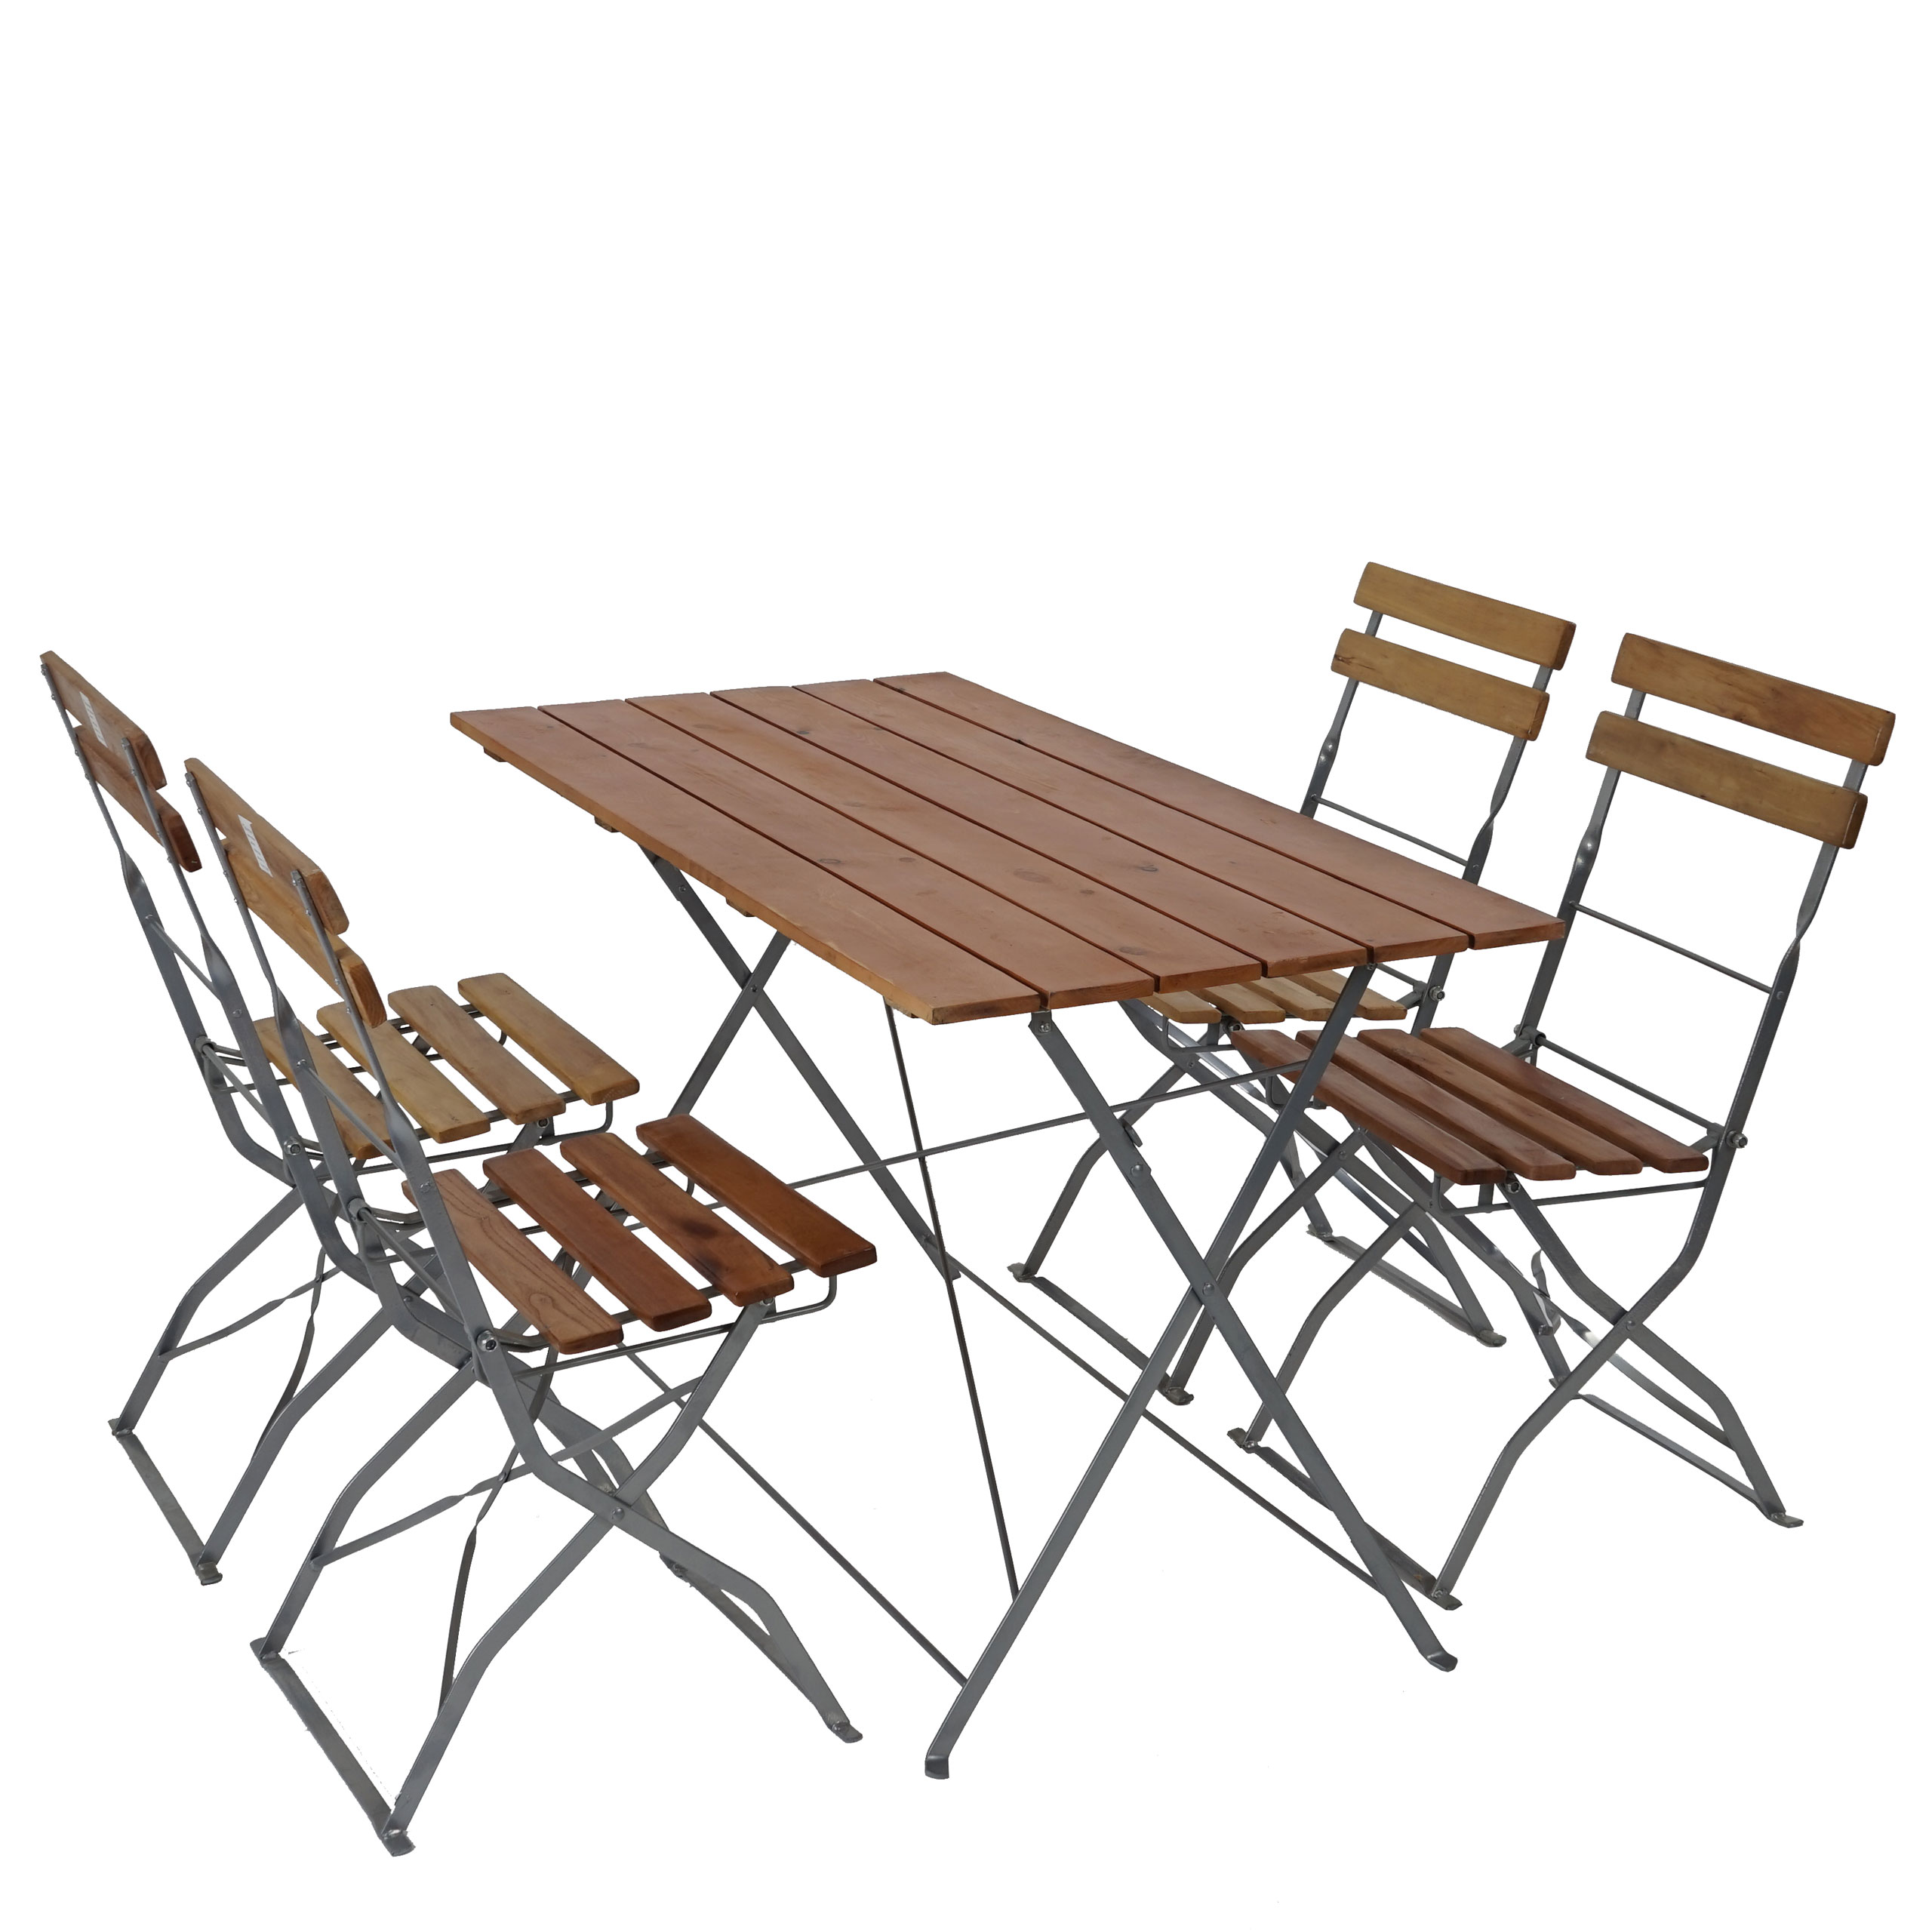 Biergarten-Garnitur Berlin, Garten-Garnitur, Tisch 4x oder 2x Stuhl | eBay